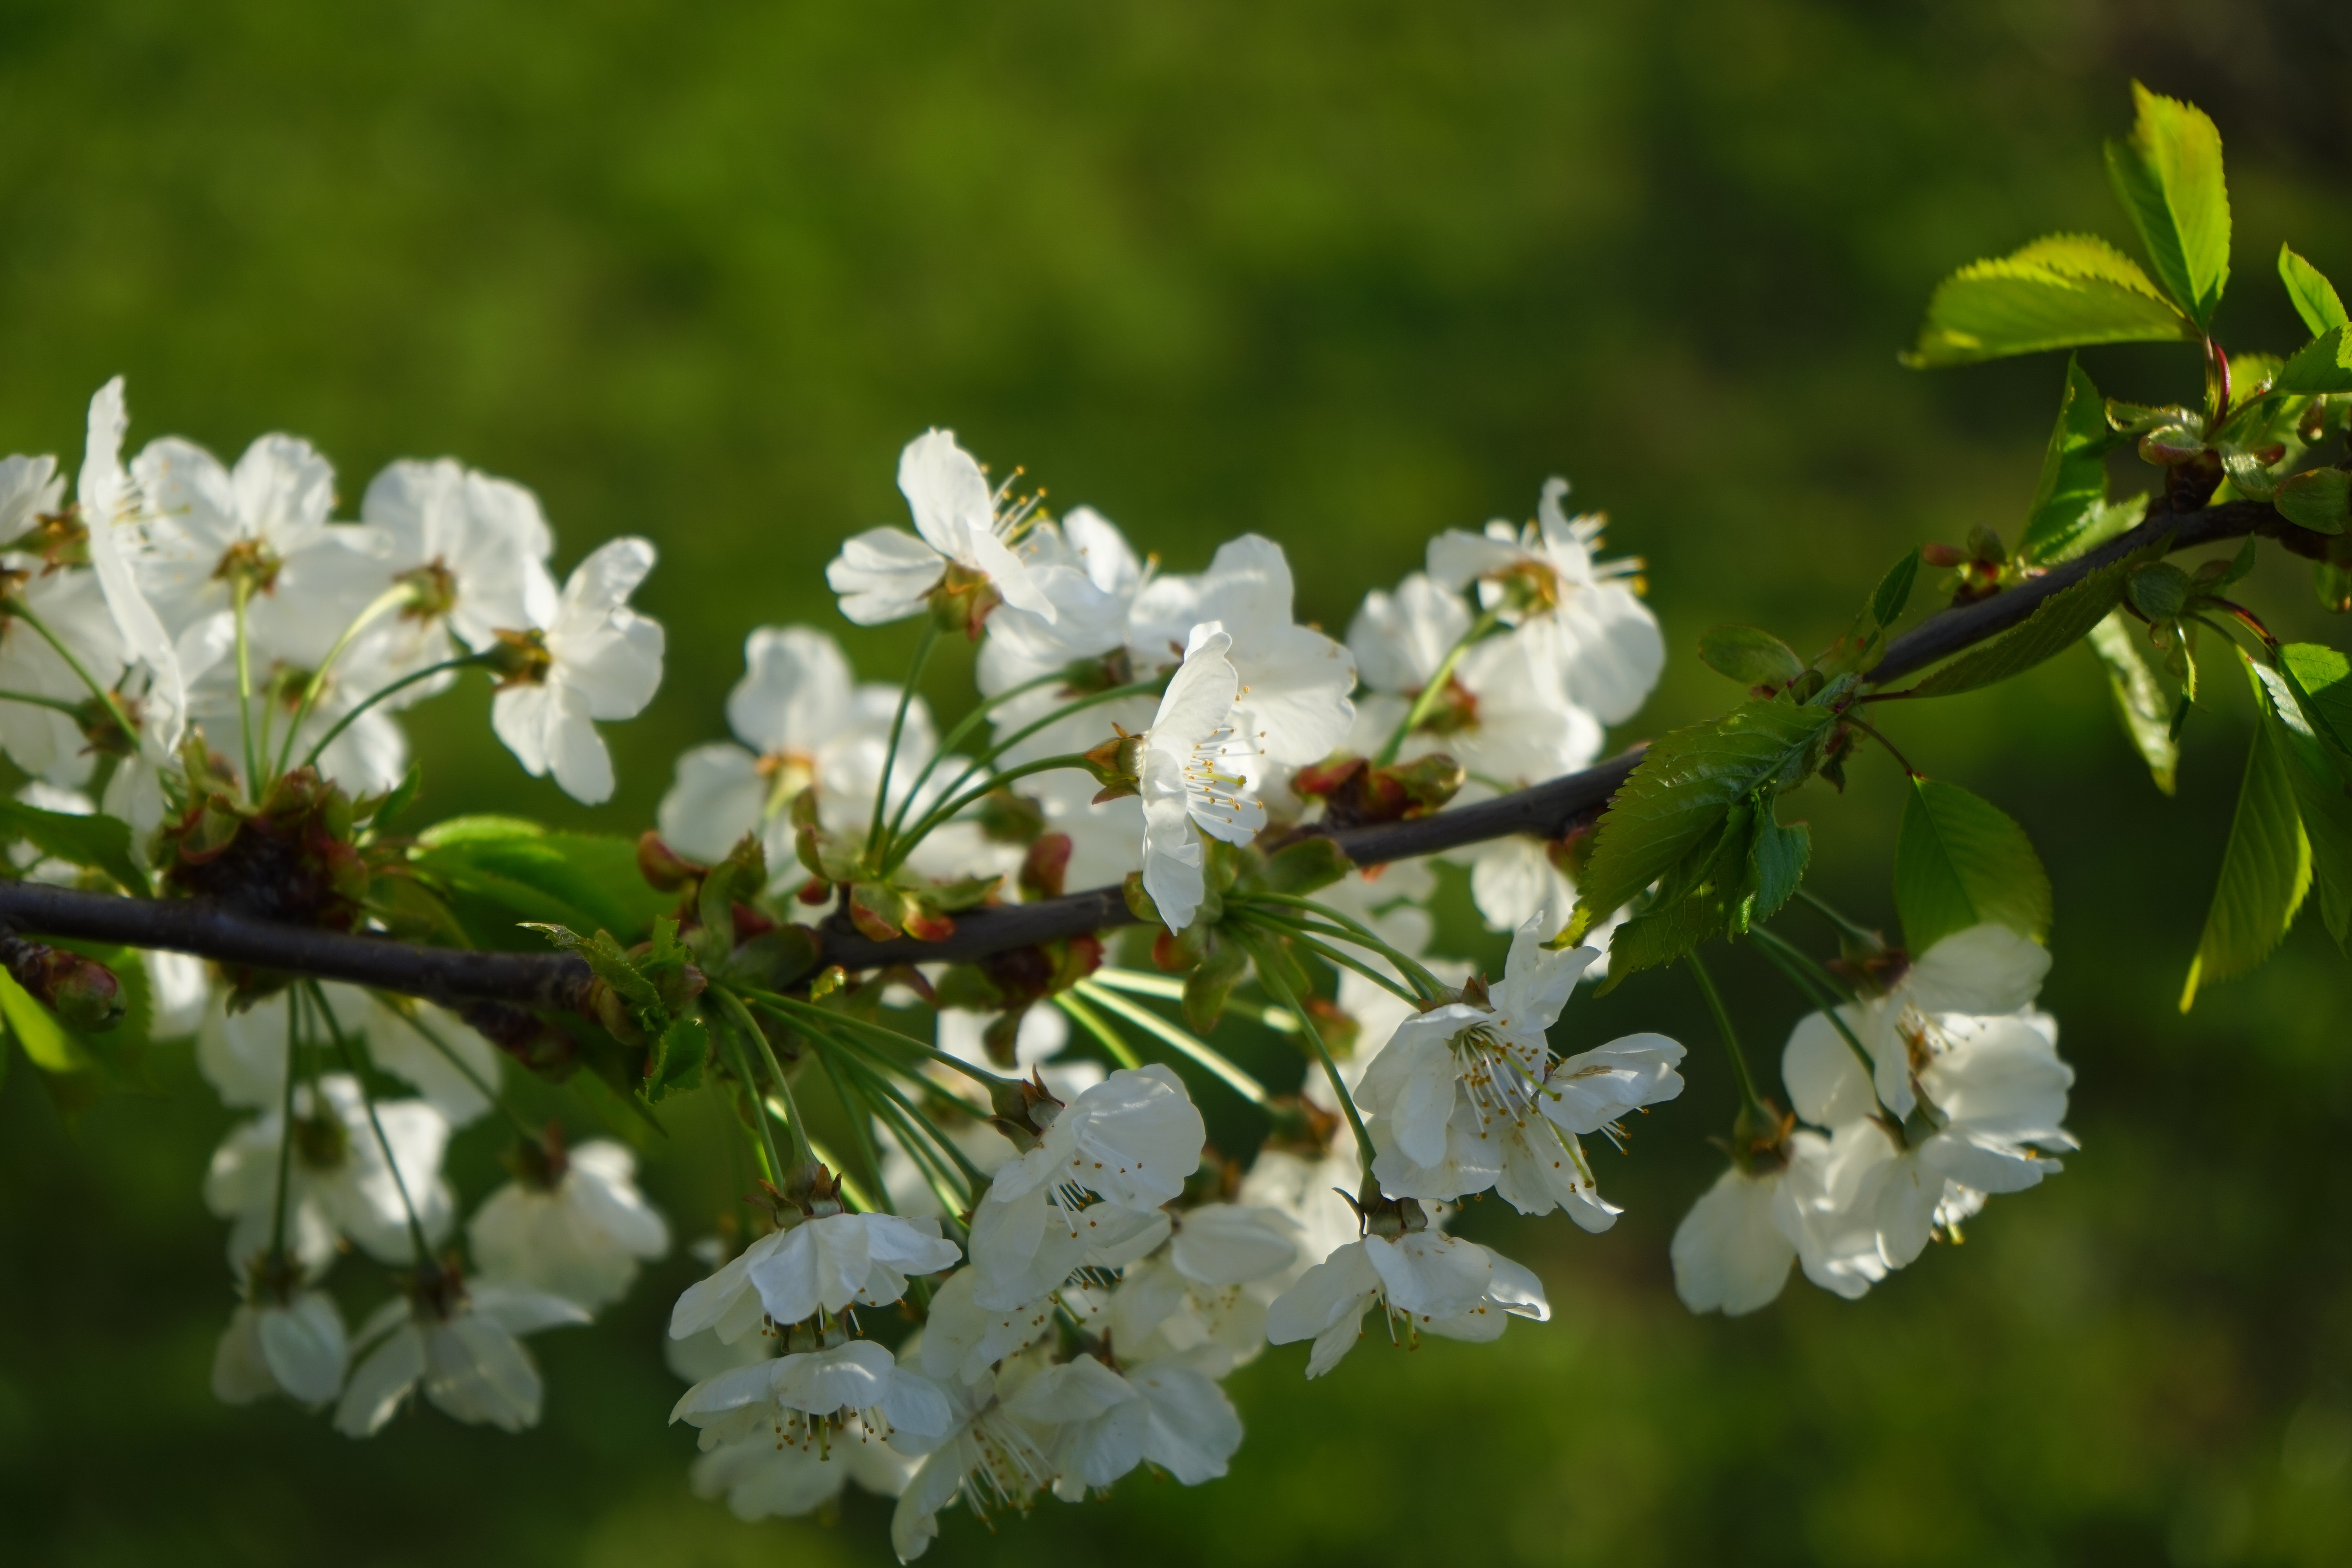 white cherry blossom flower